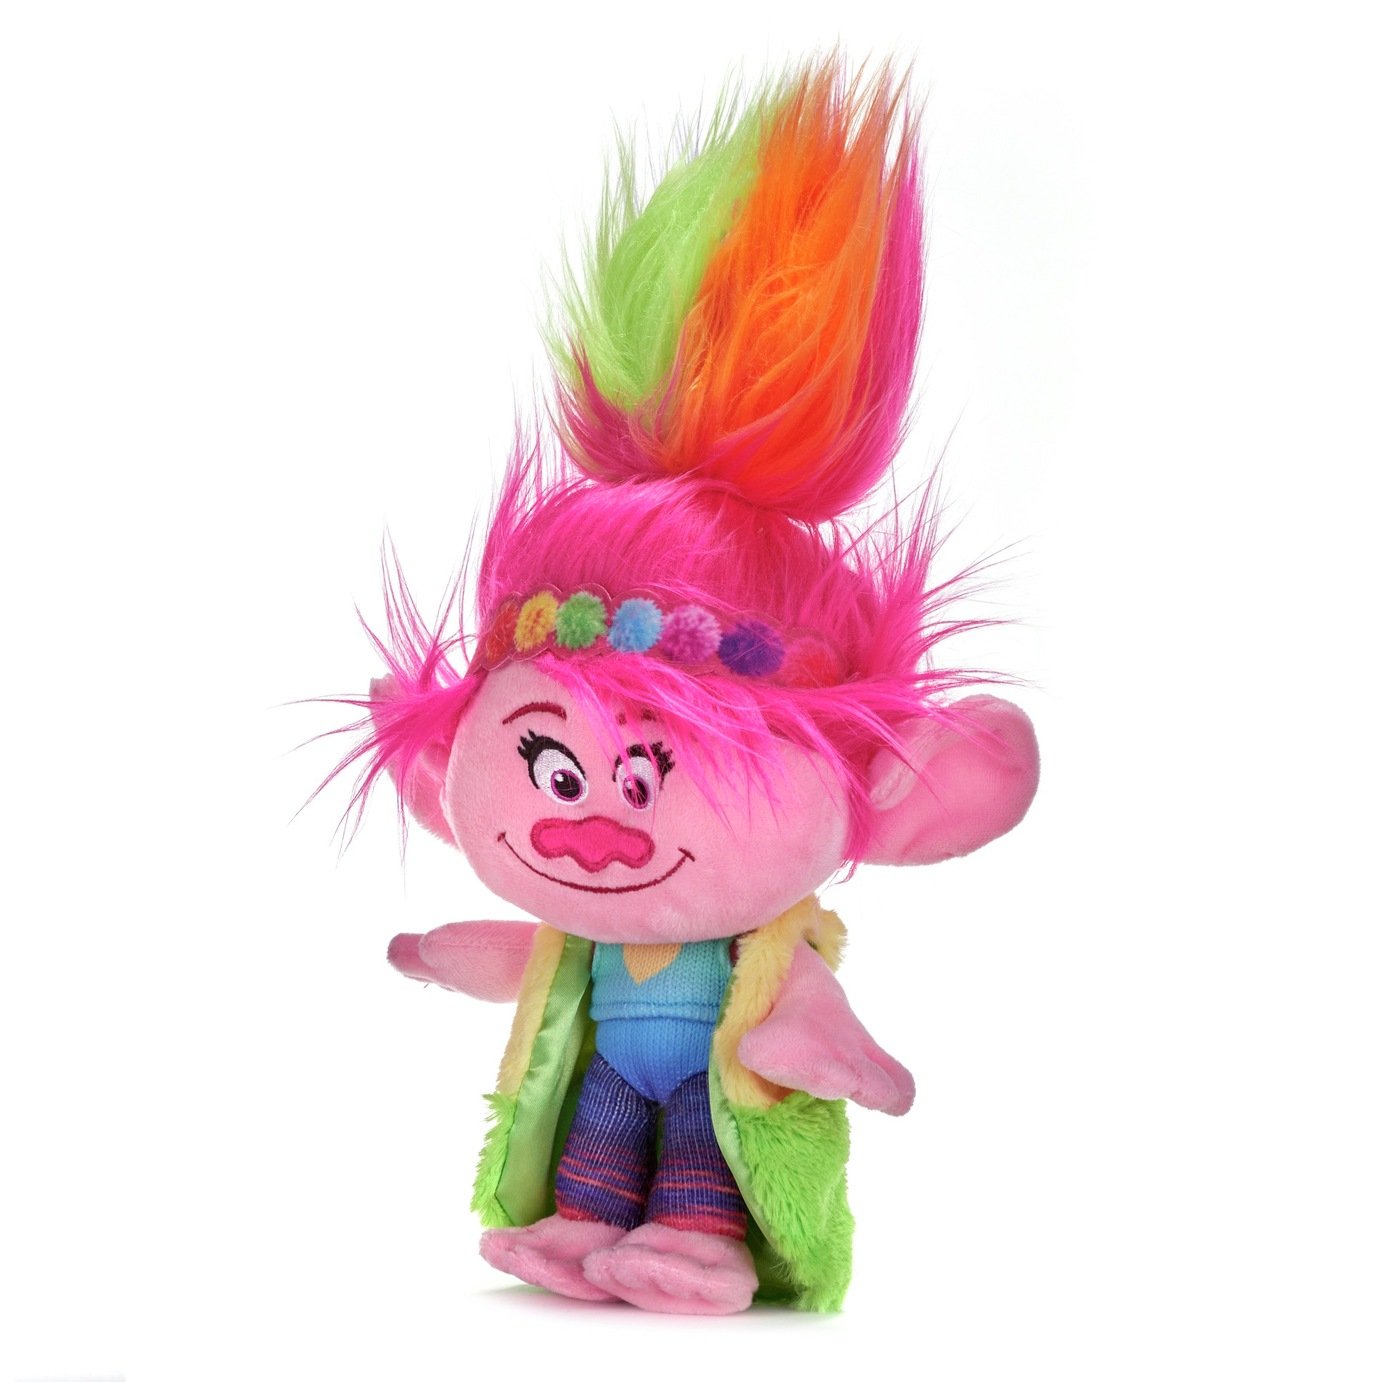 Trolls 2 10 Inch Rainbow Poppy Soft Toy Review